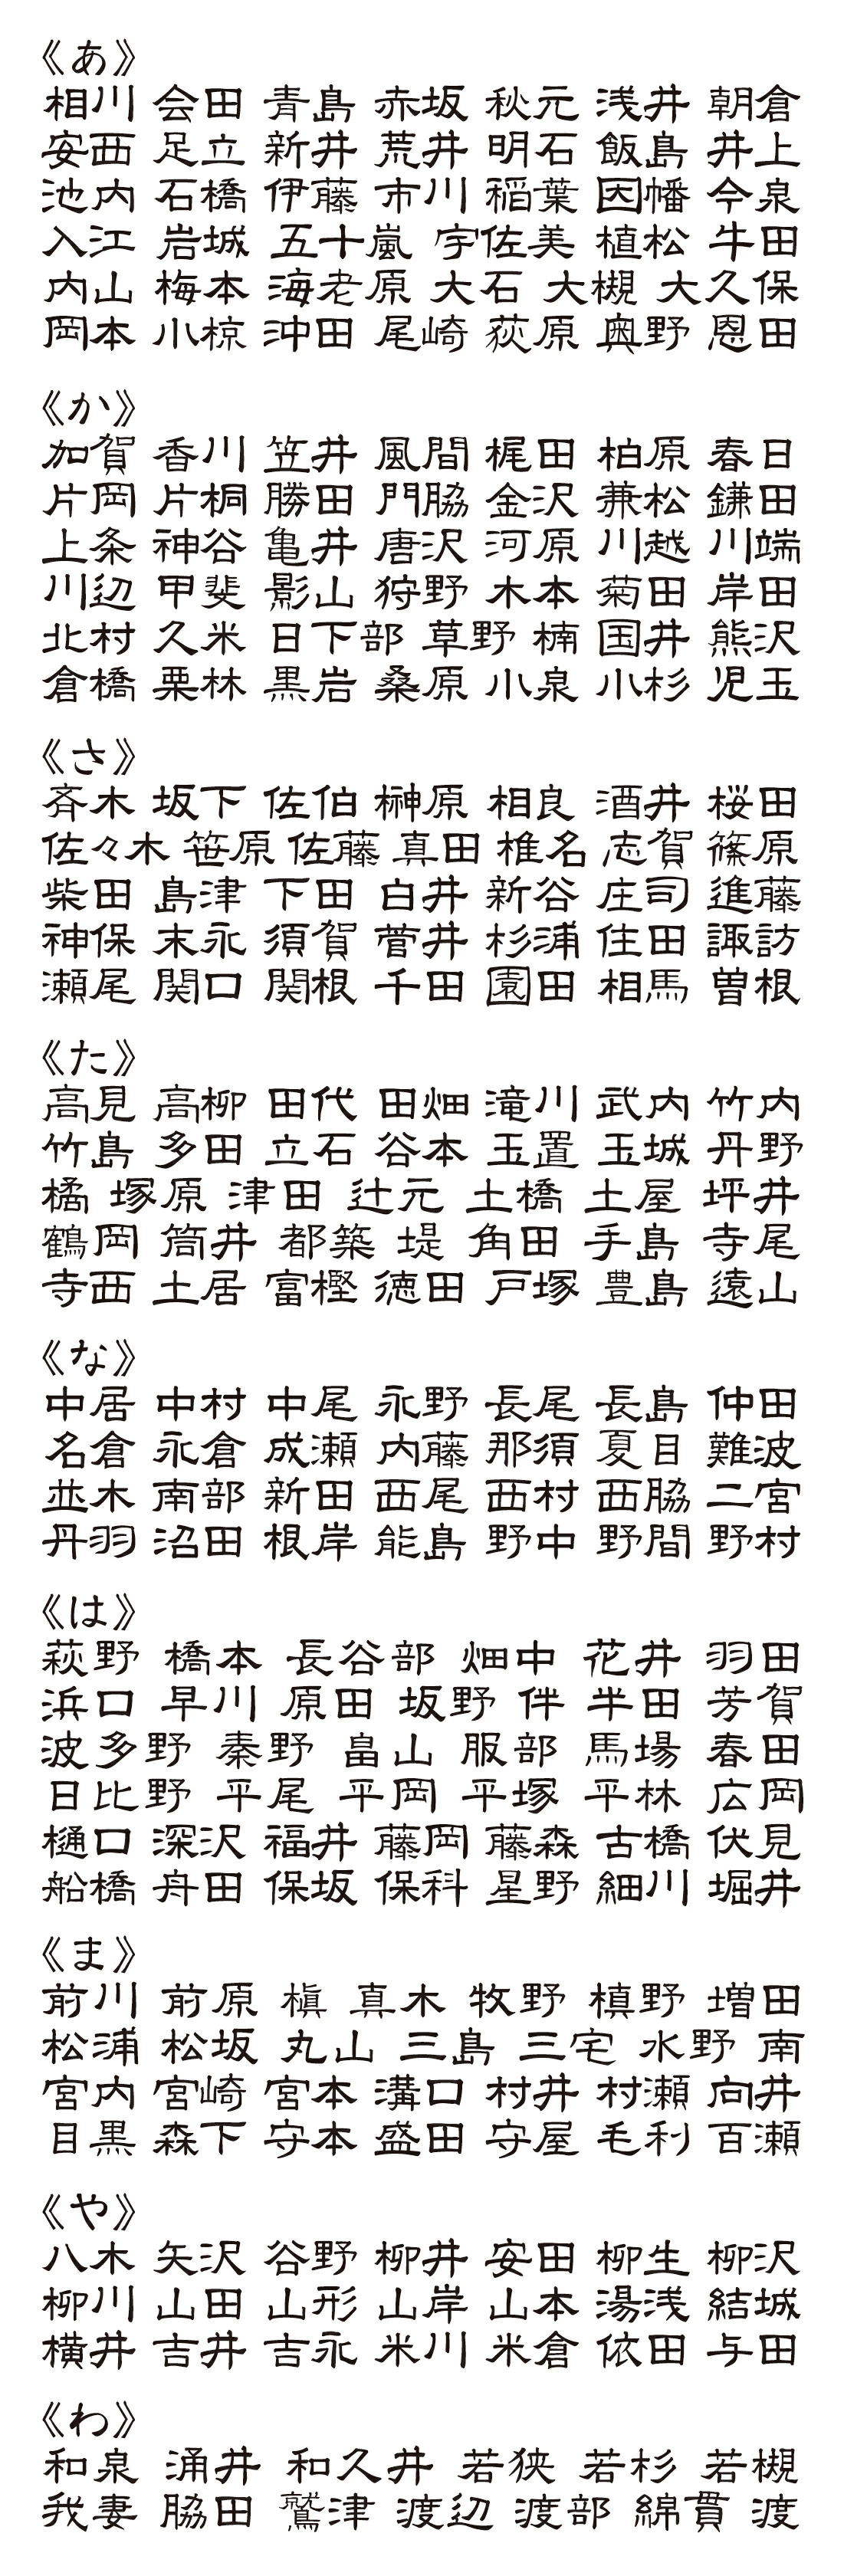 表札 書体 おすすめ 人気 表和5 漢字